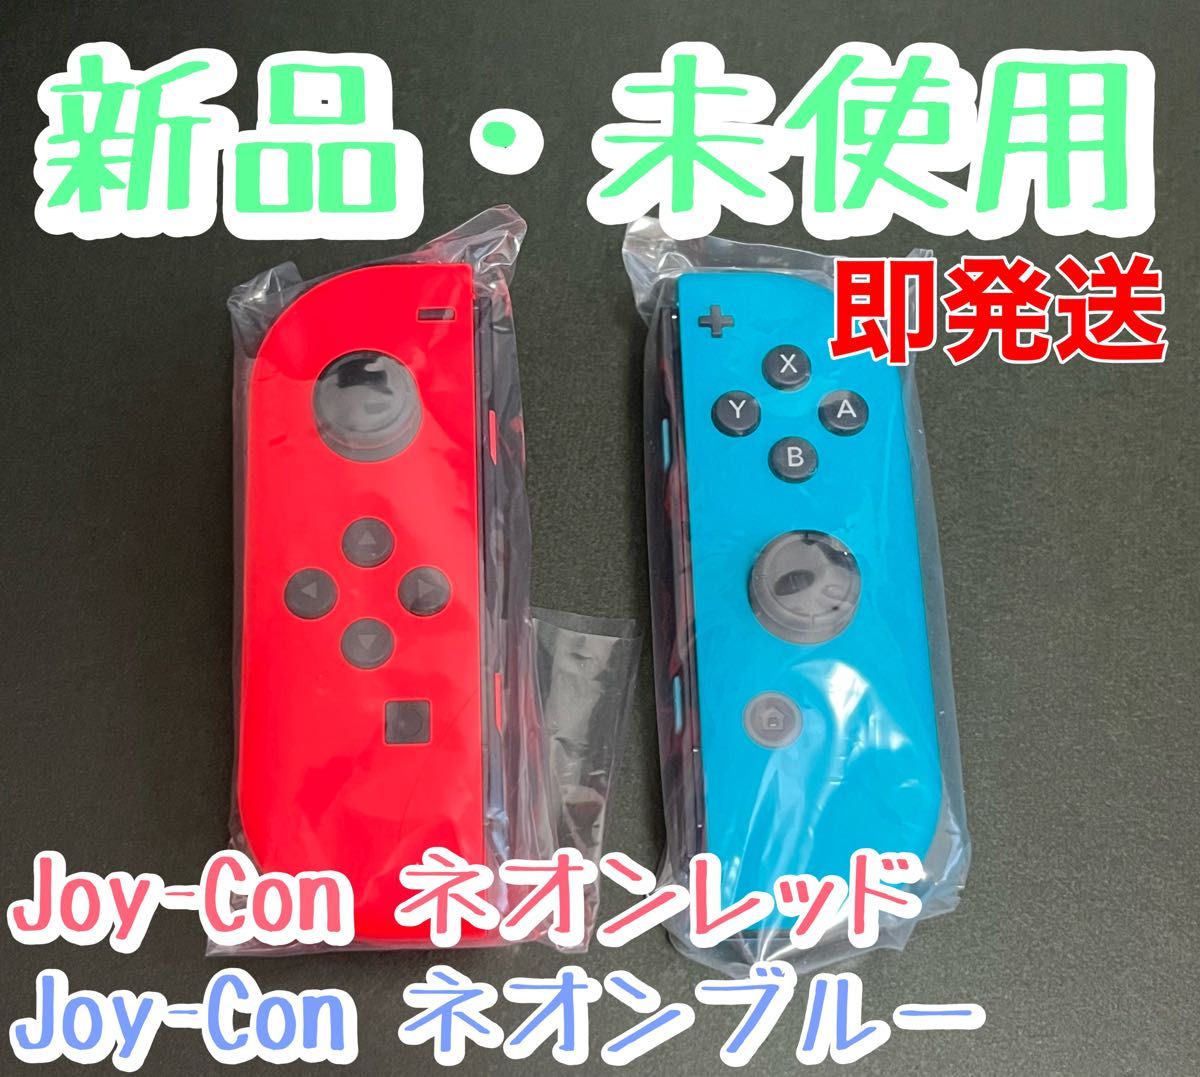 新品 純正品 NintendoSwitchJoy-Con (L)(R) ネオンブルー ネオンレッド